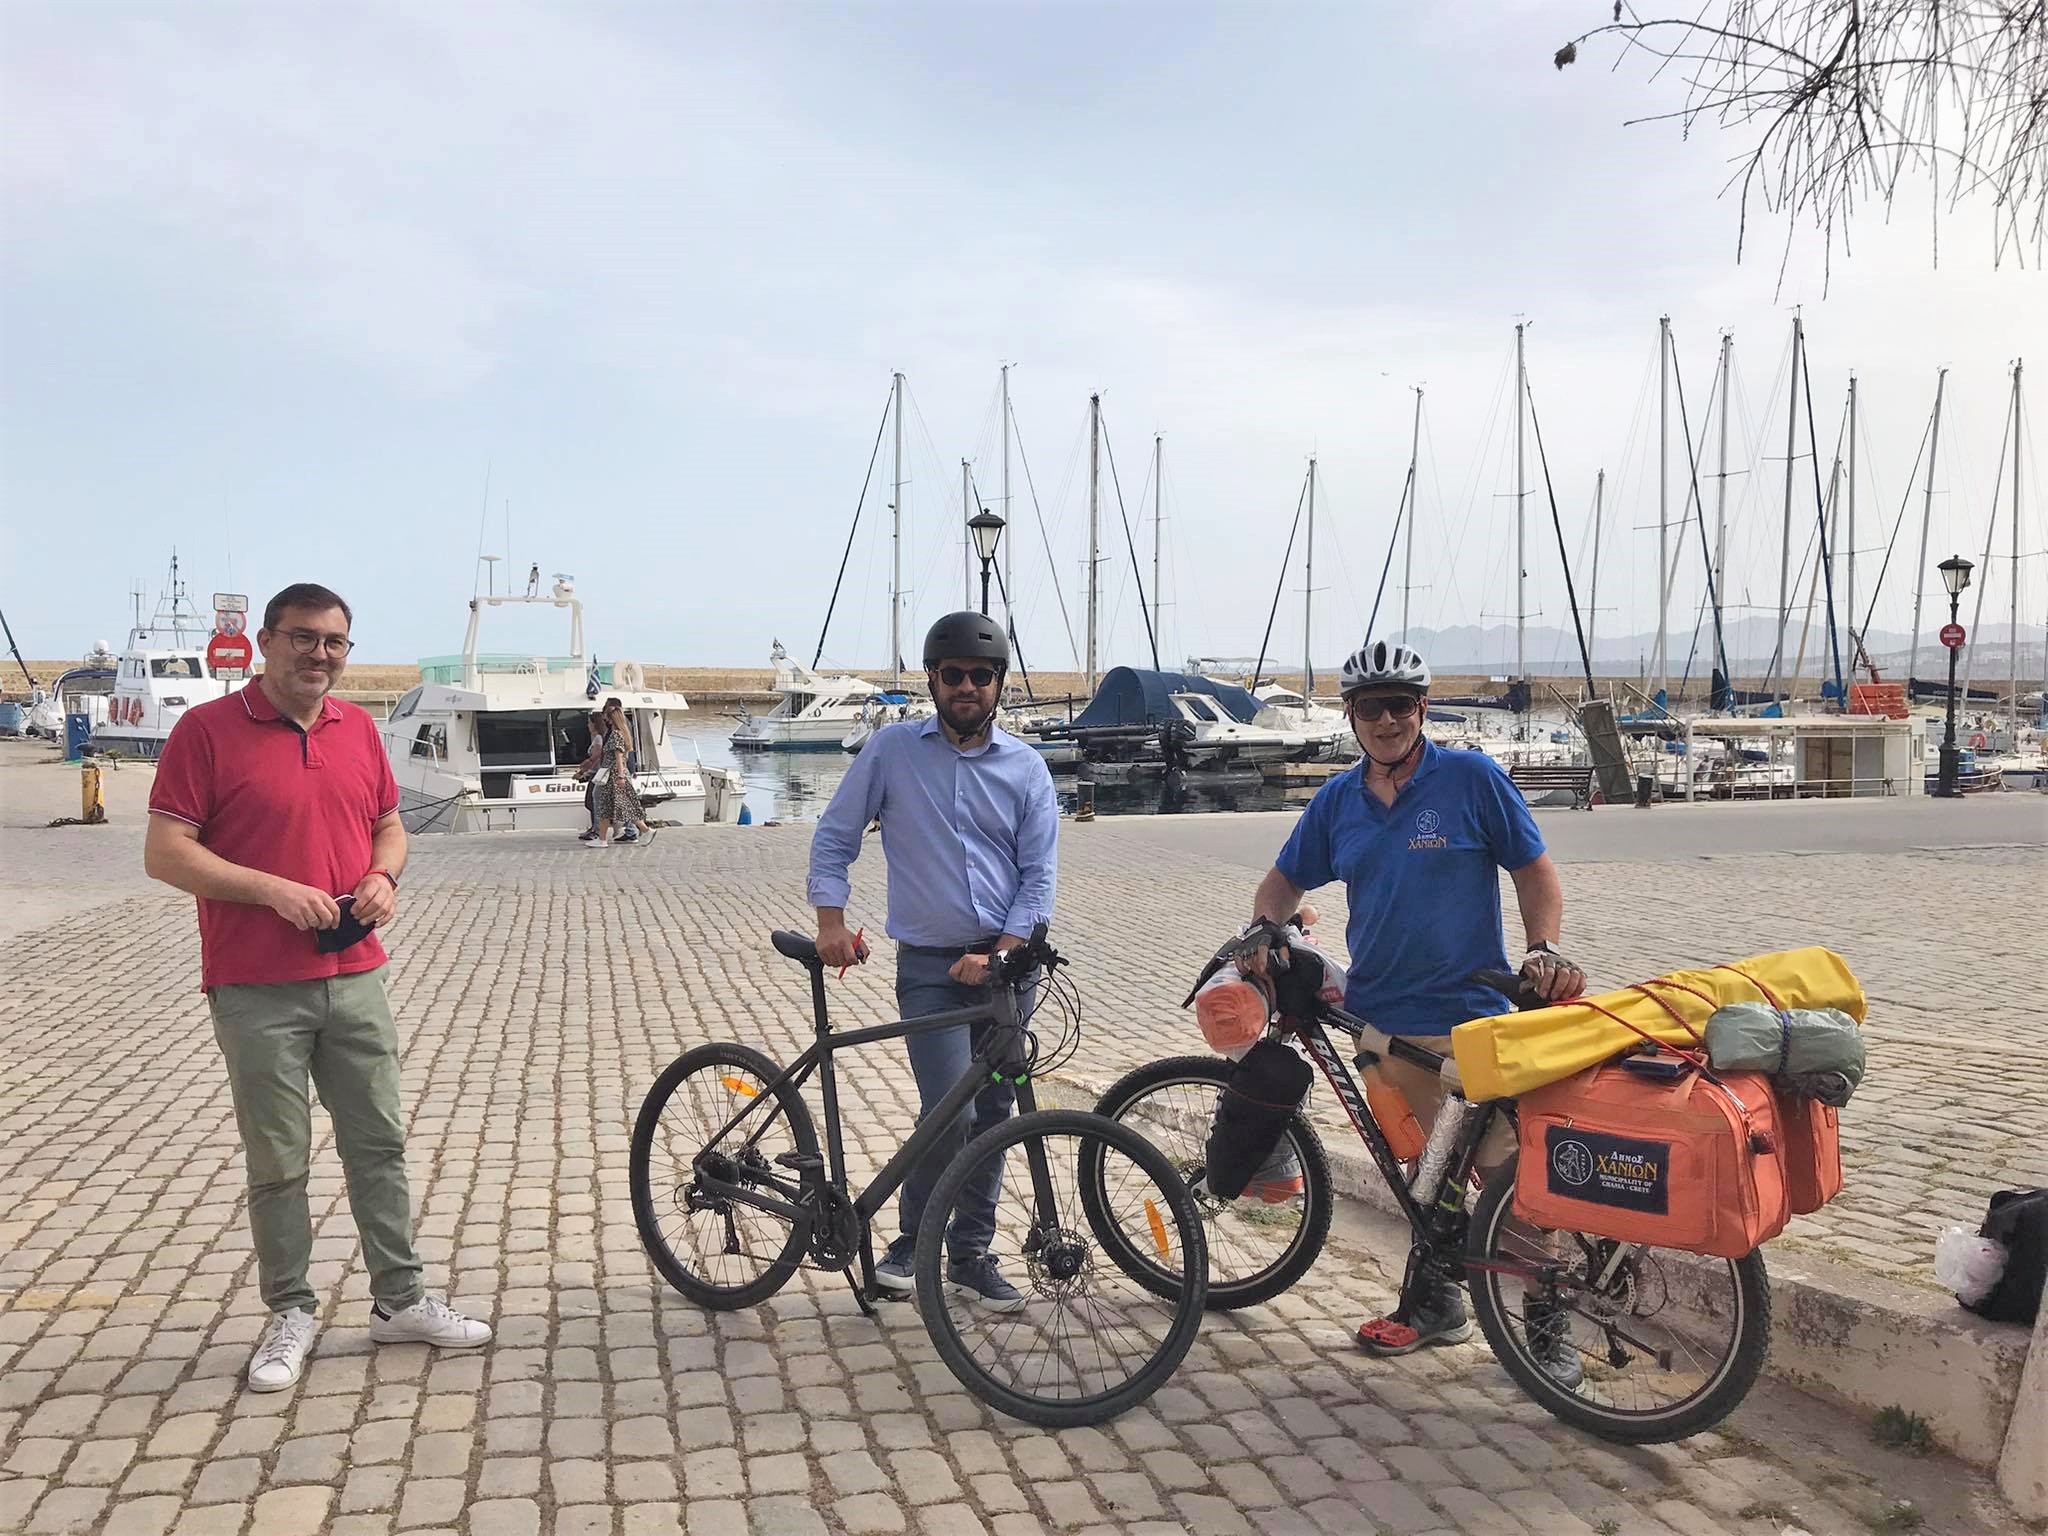 “Ποδηλατώντας την Ελλάδα”: Με την υποστήριξη του Δήμου Χανίων το ποδηλατικό ταξίδι 7.000km